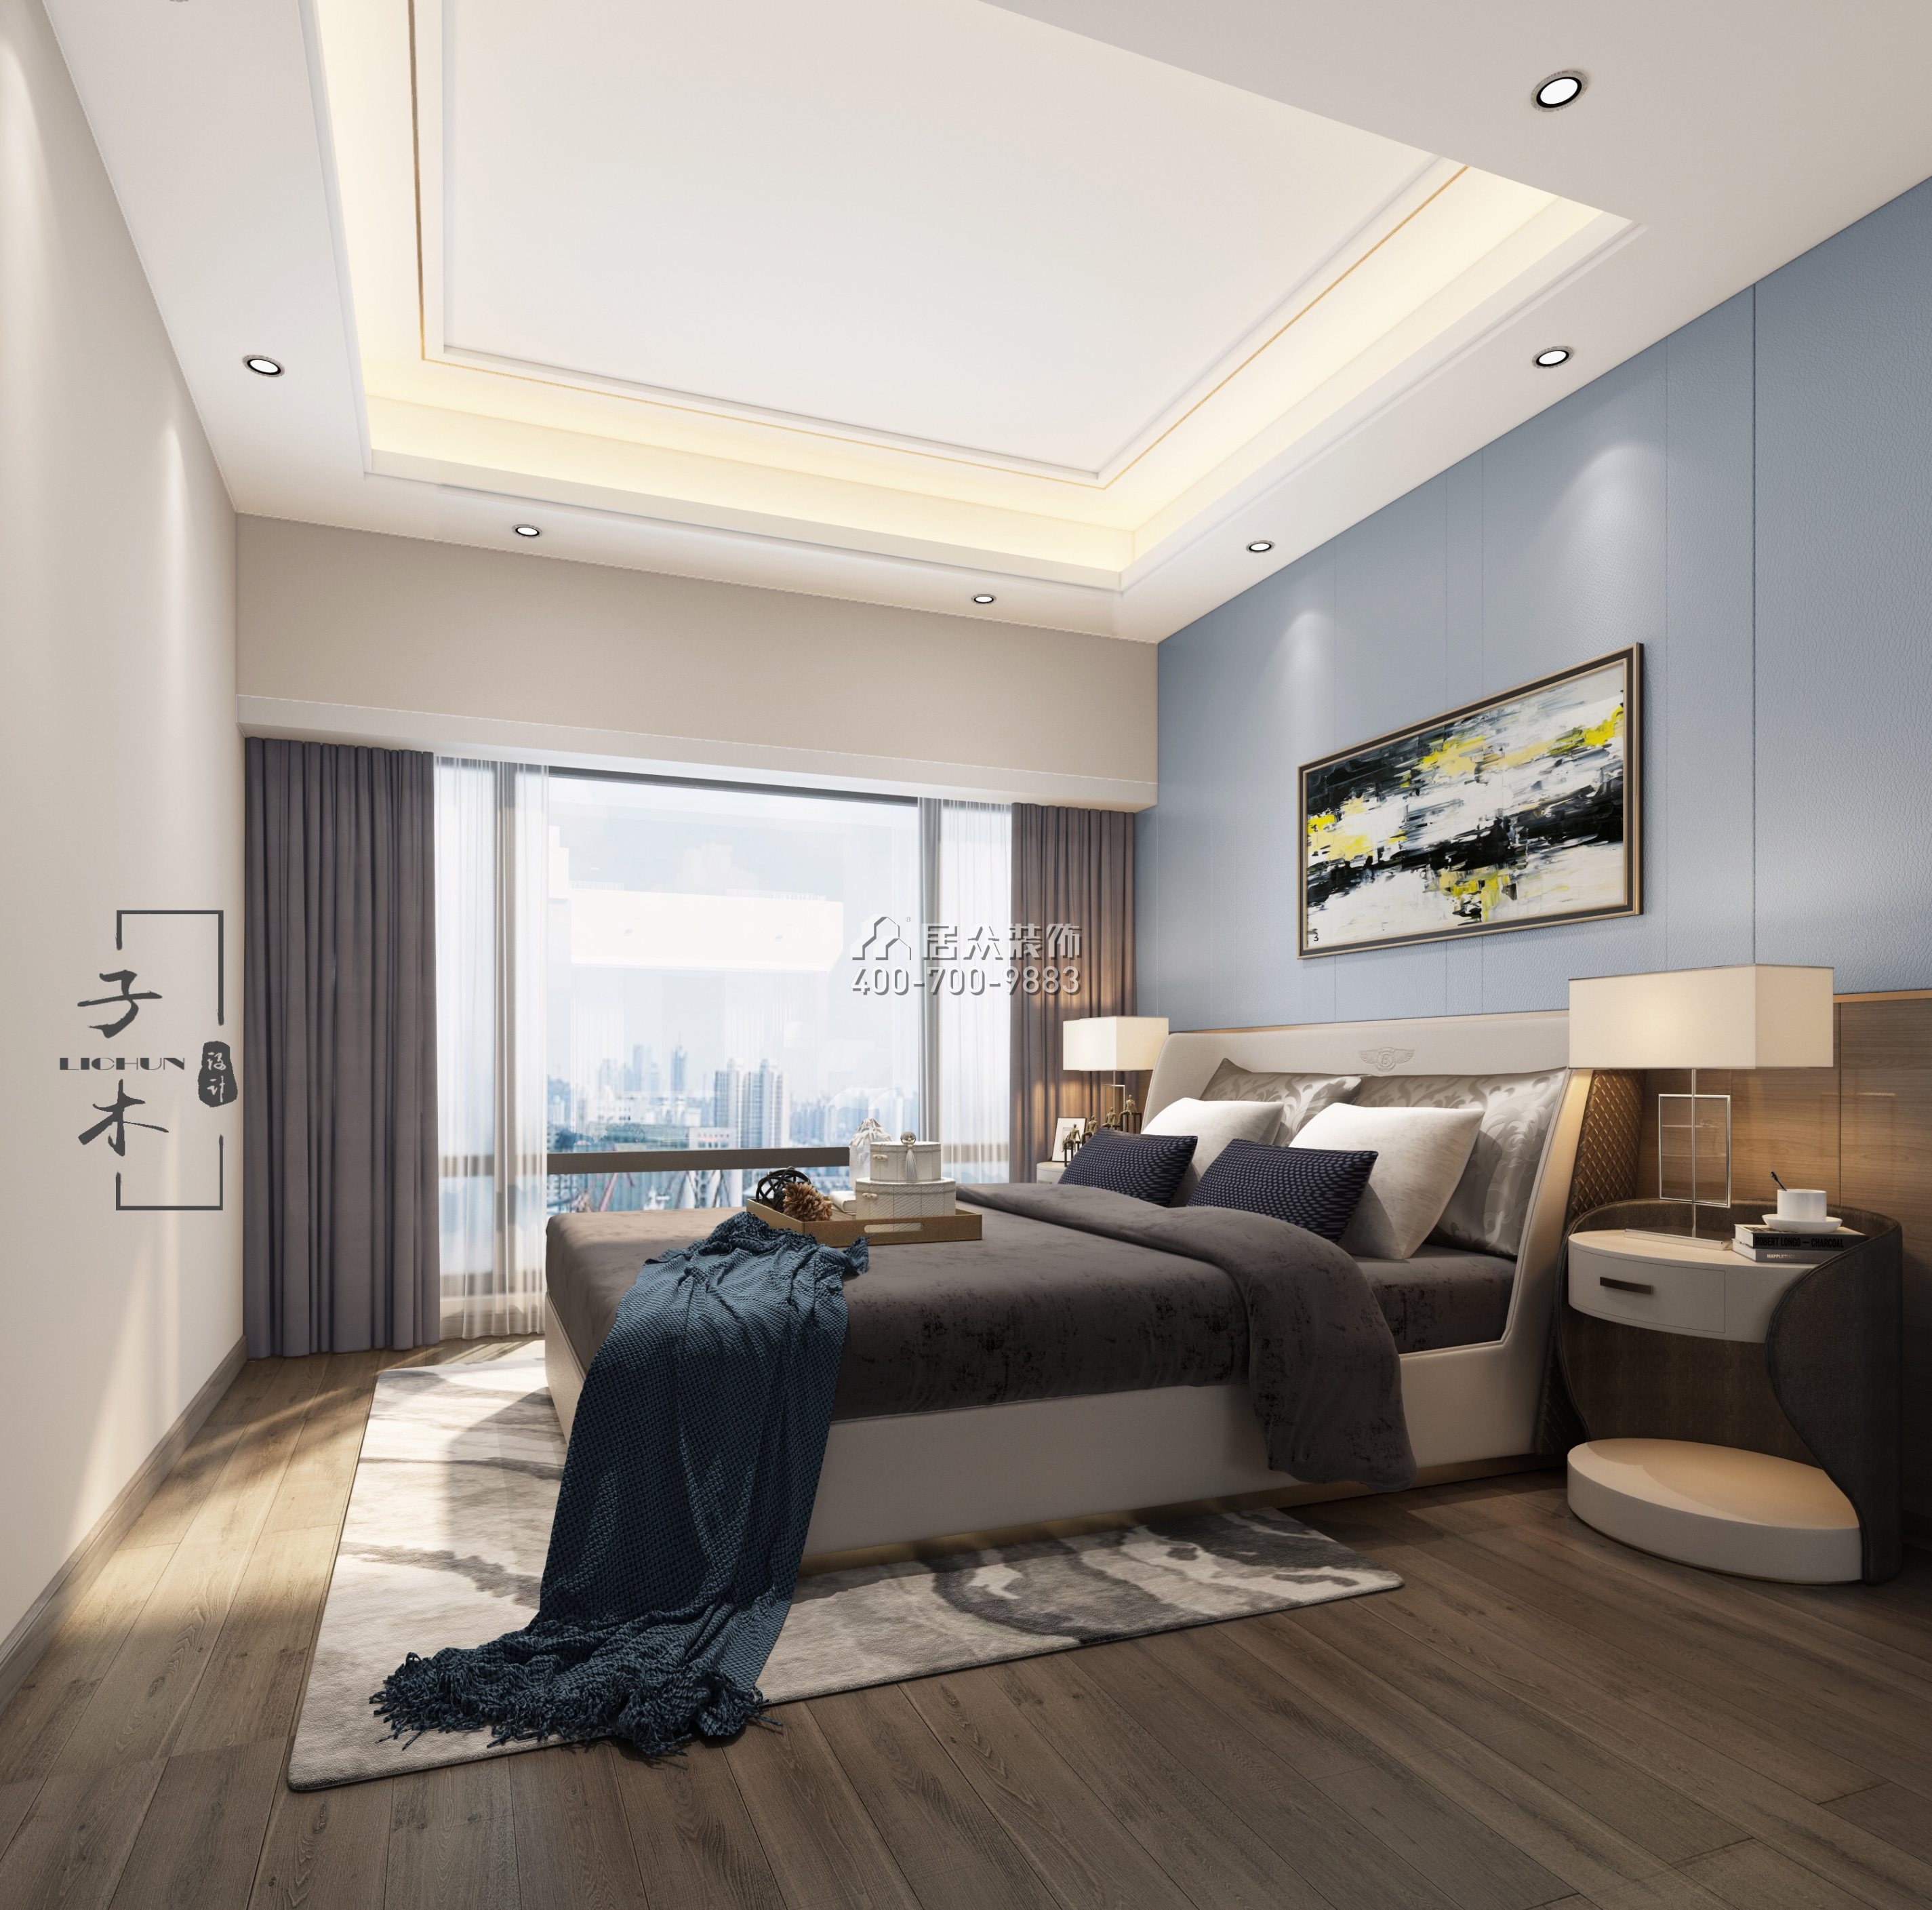 香山里花园二期190平方米现代简约风格平层户型卧室装修效果图